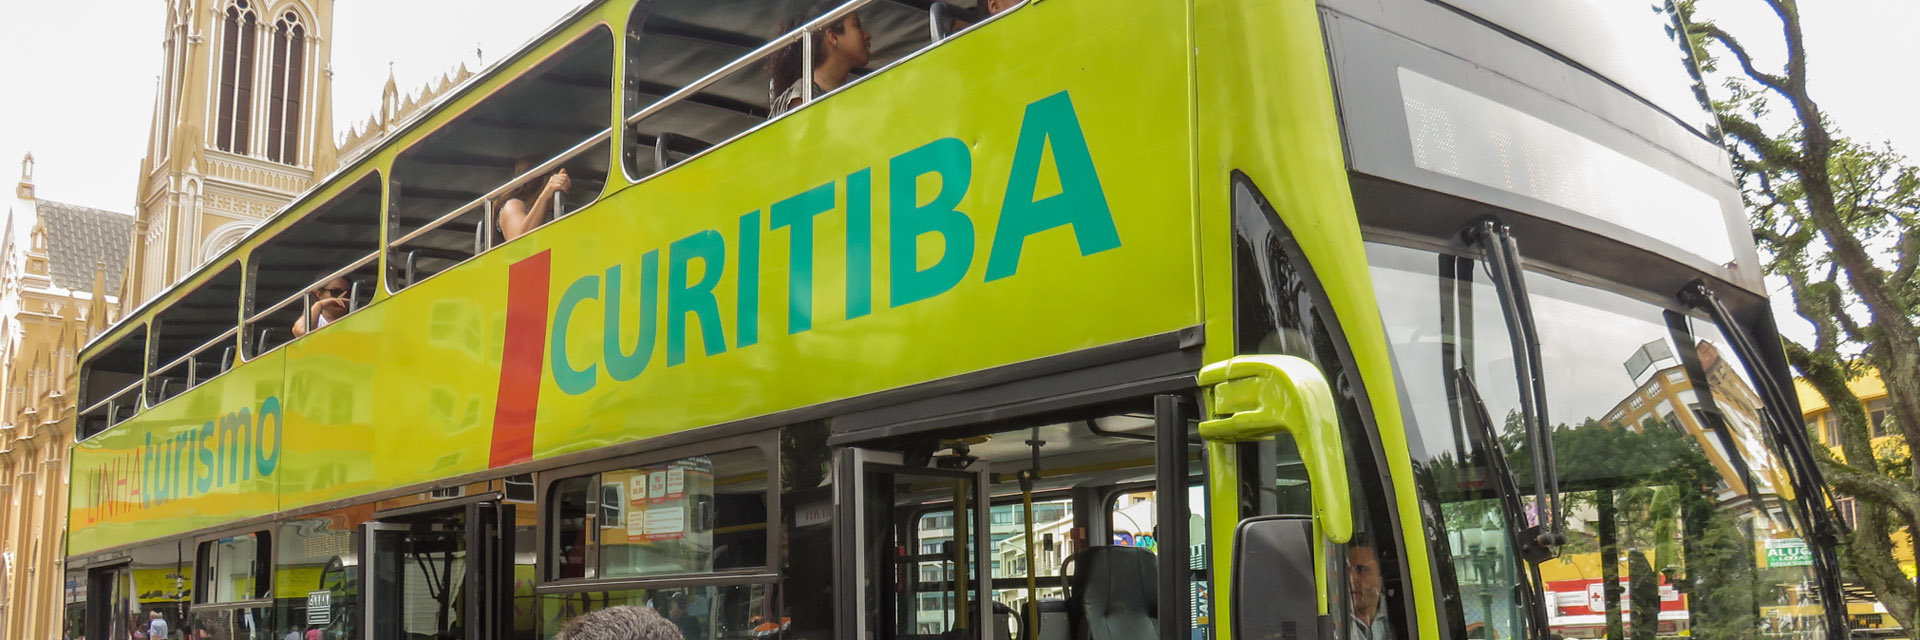 Curitiba Linha Turismo